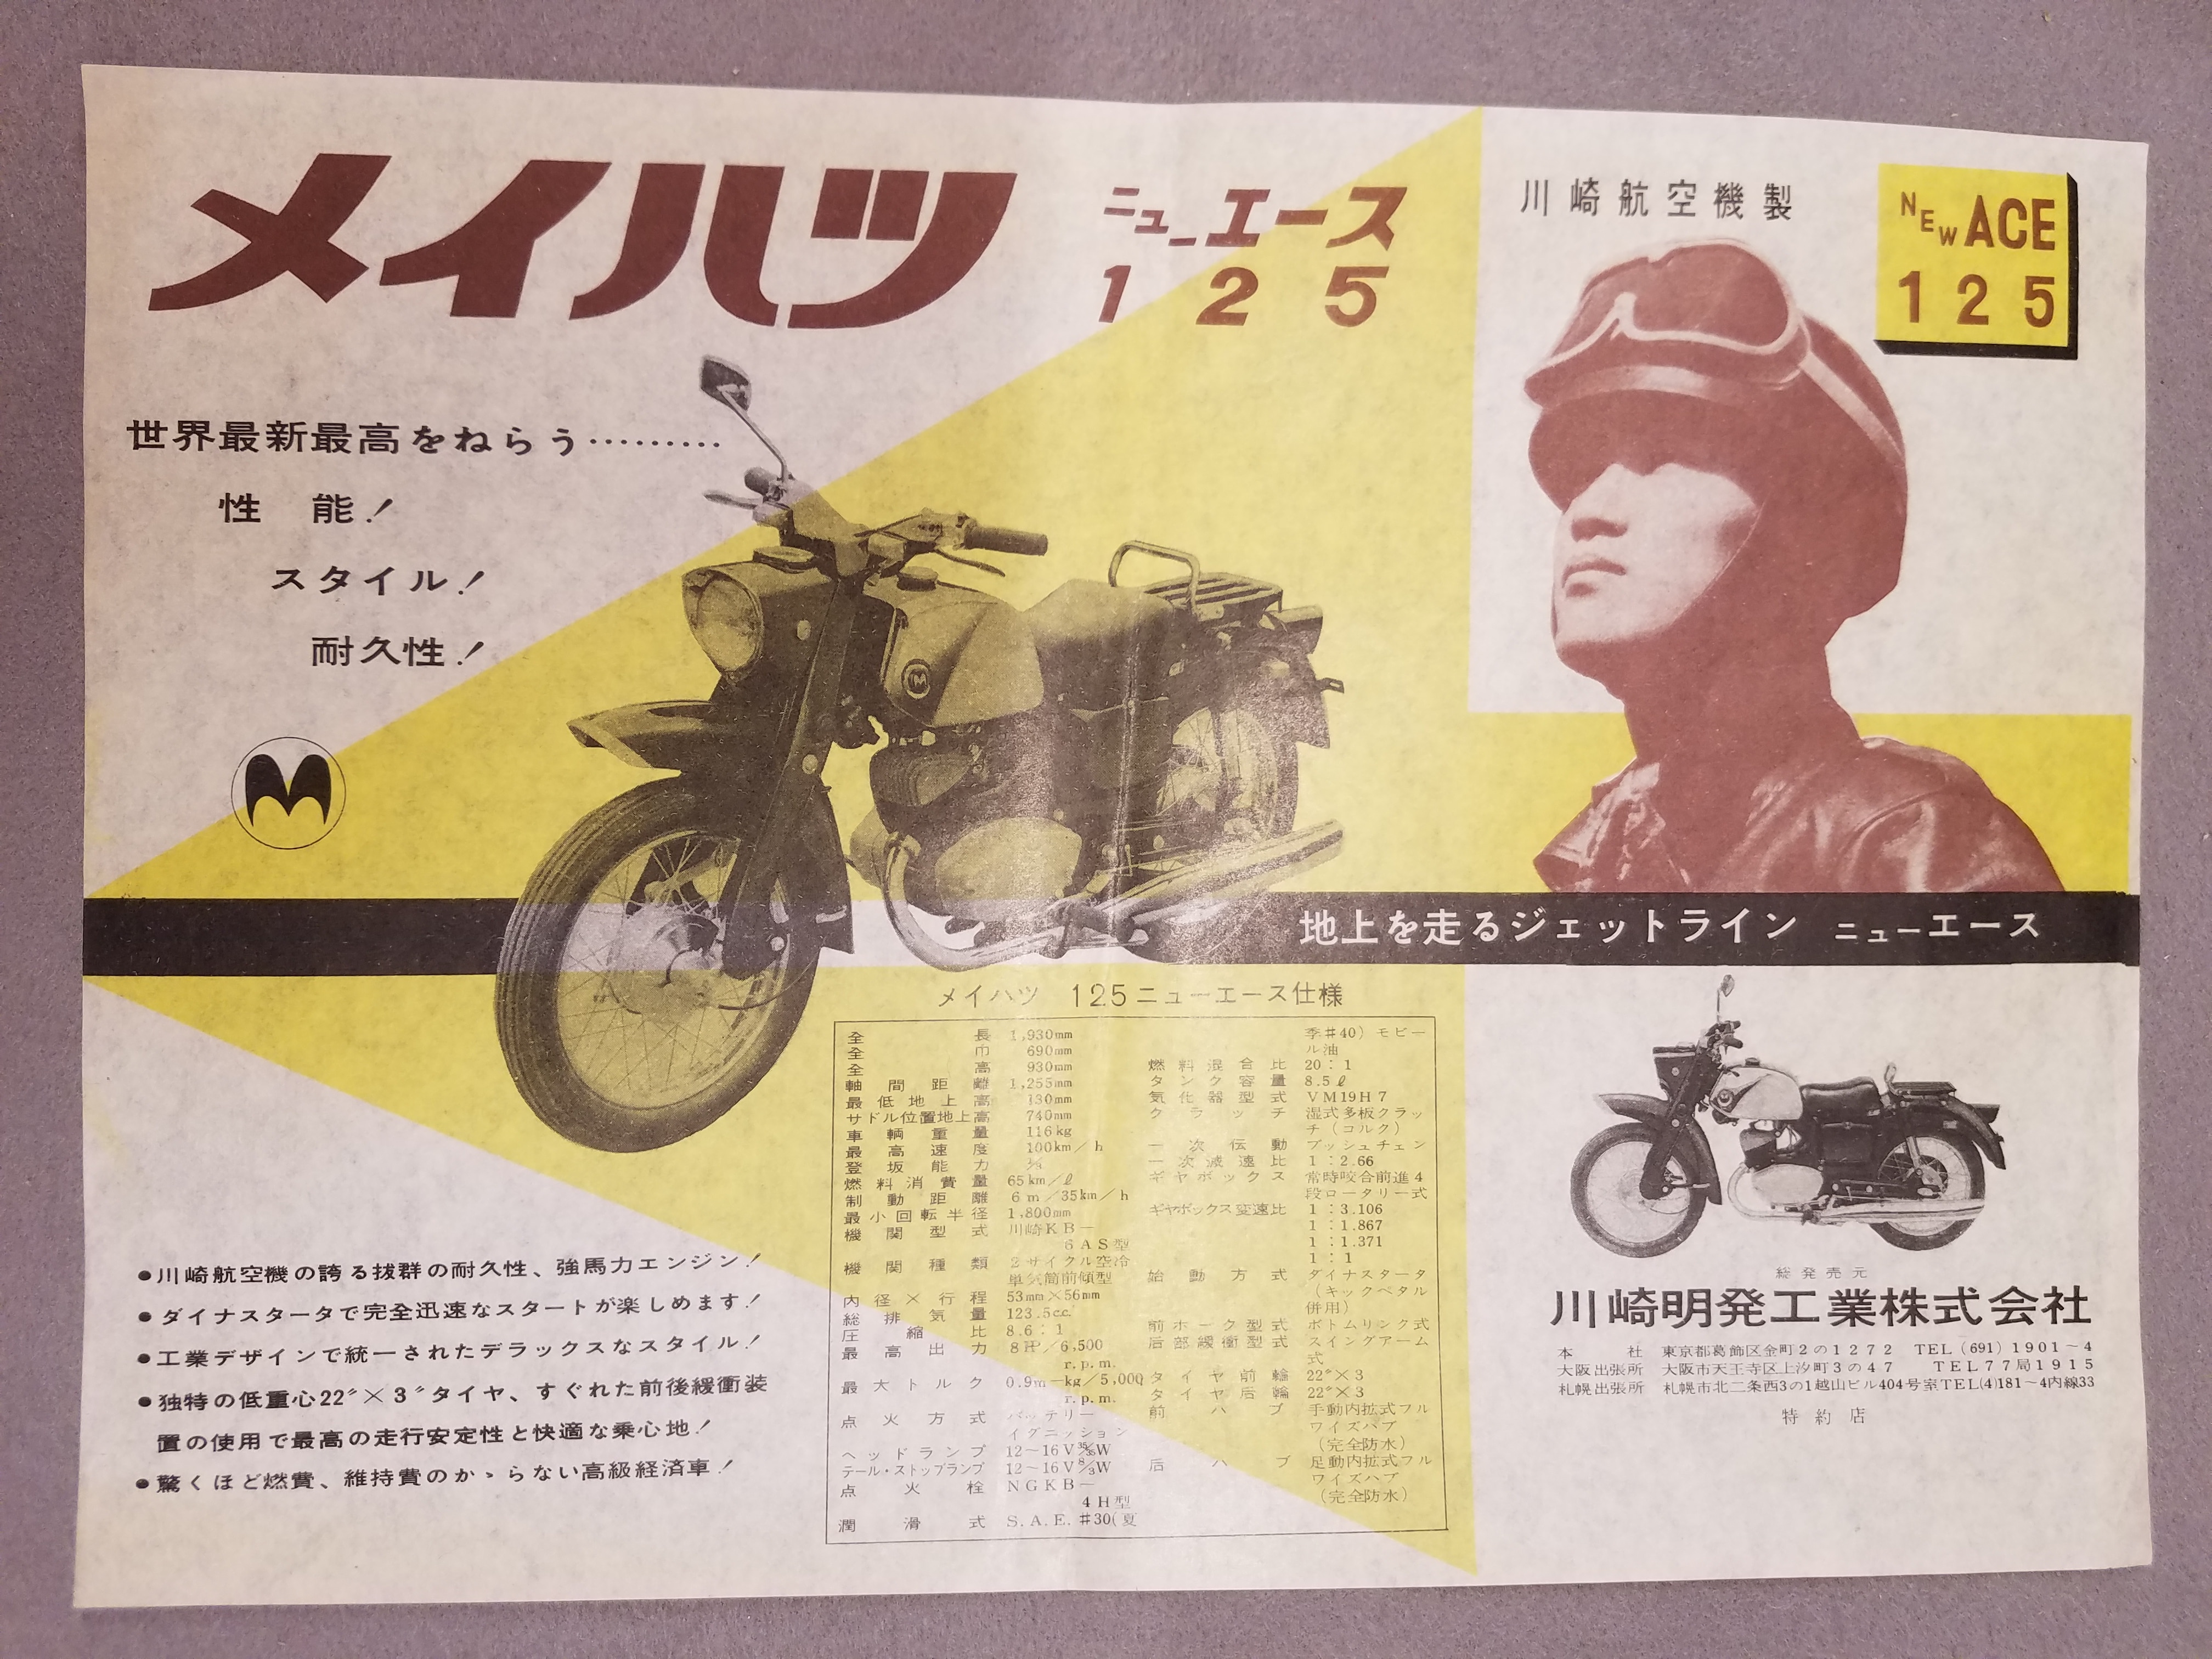 Kawasaki Akira Kogyo Co., Ltd. Car catalog Meihatsu New Ace 125 